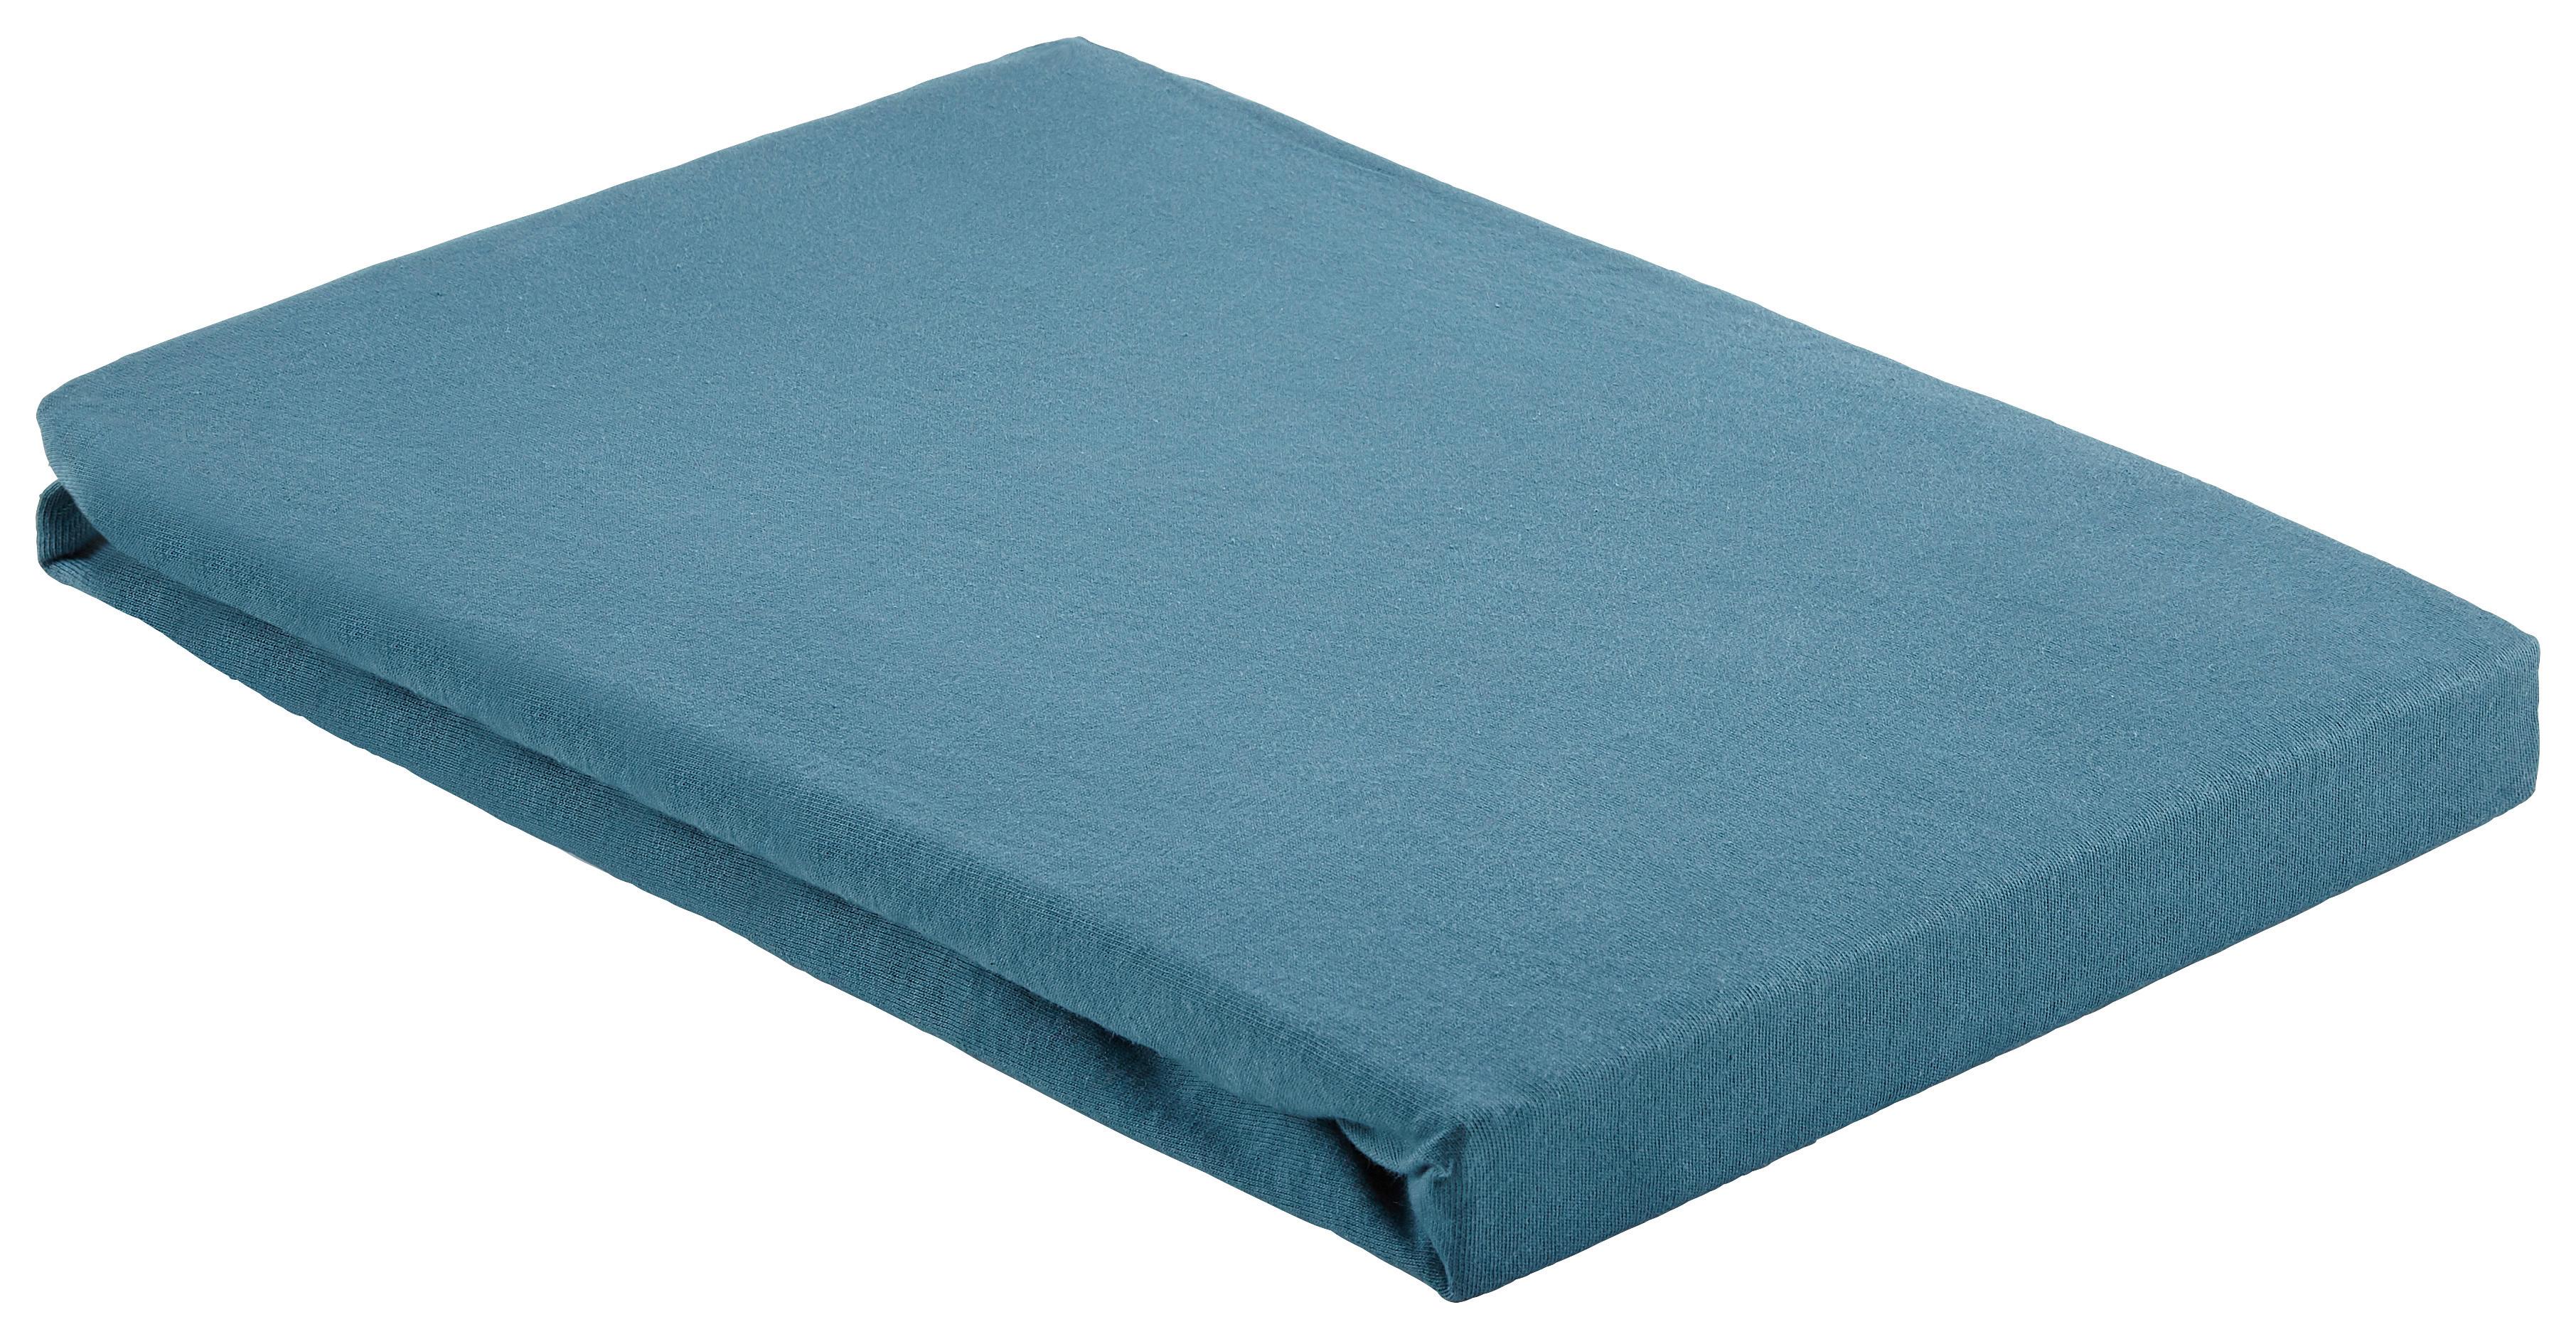 Napínacia Plachta Basic, 100/200cm, Modrá - modrá, textil (100/200cm) - Modern Living